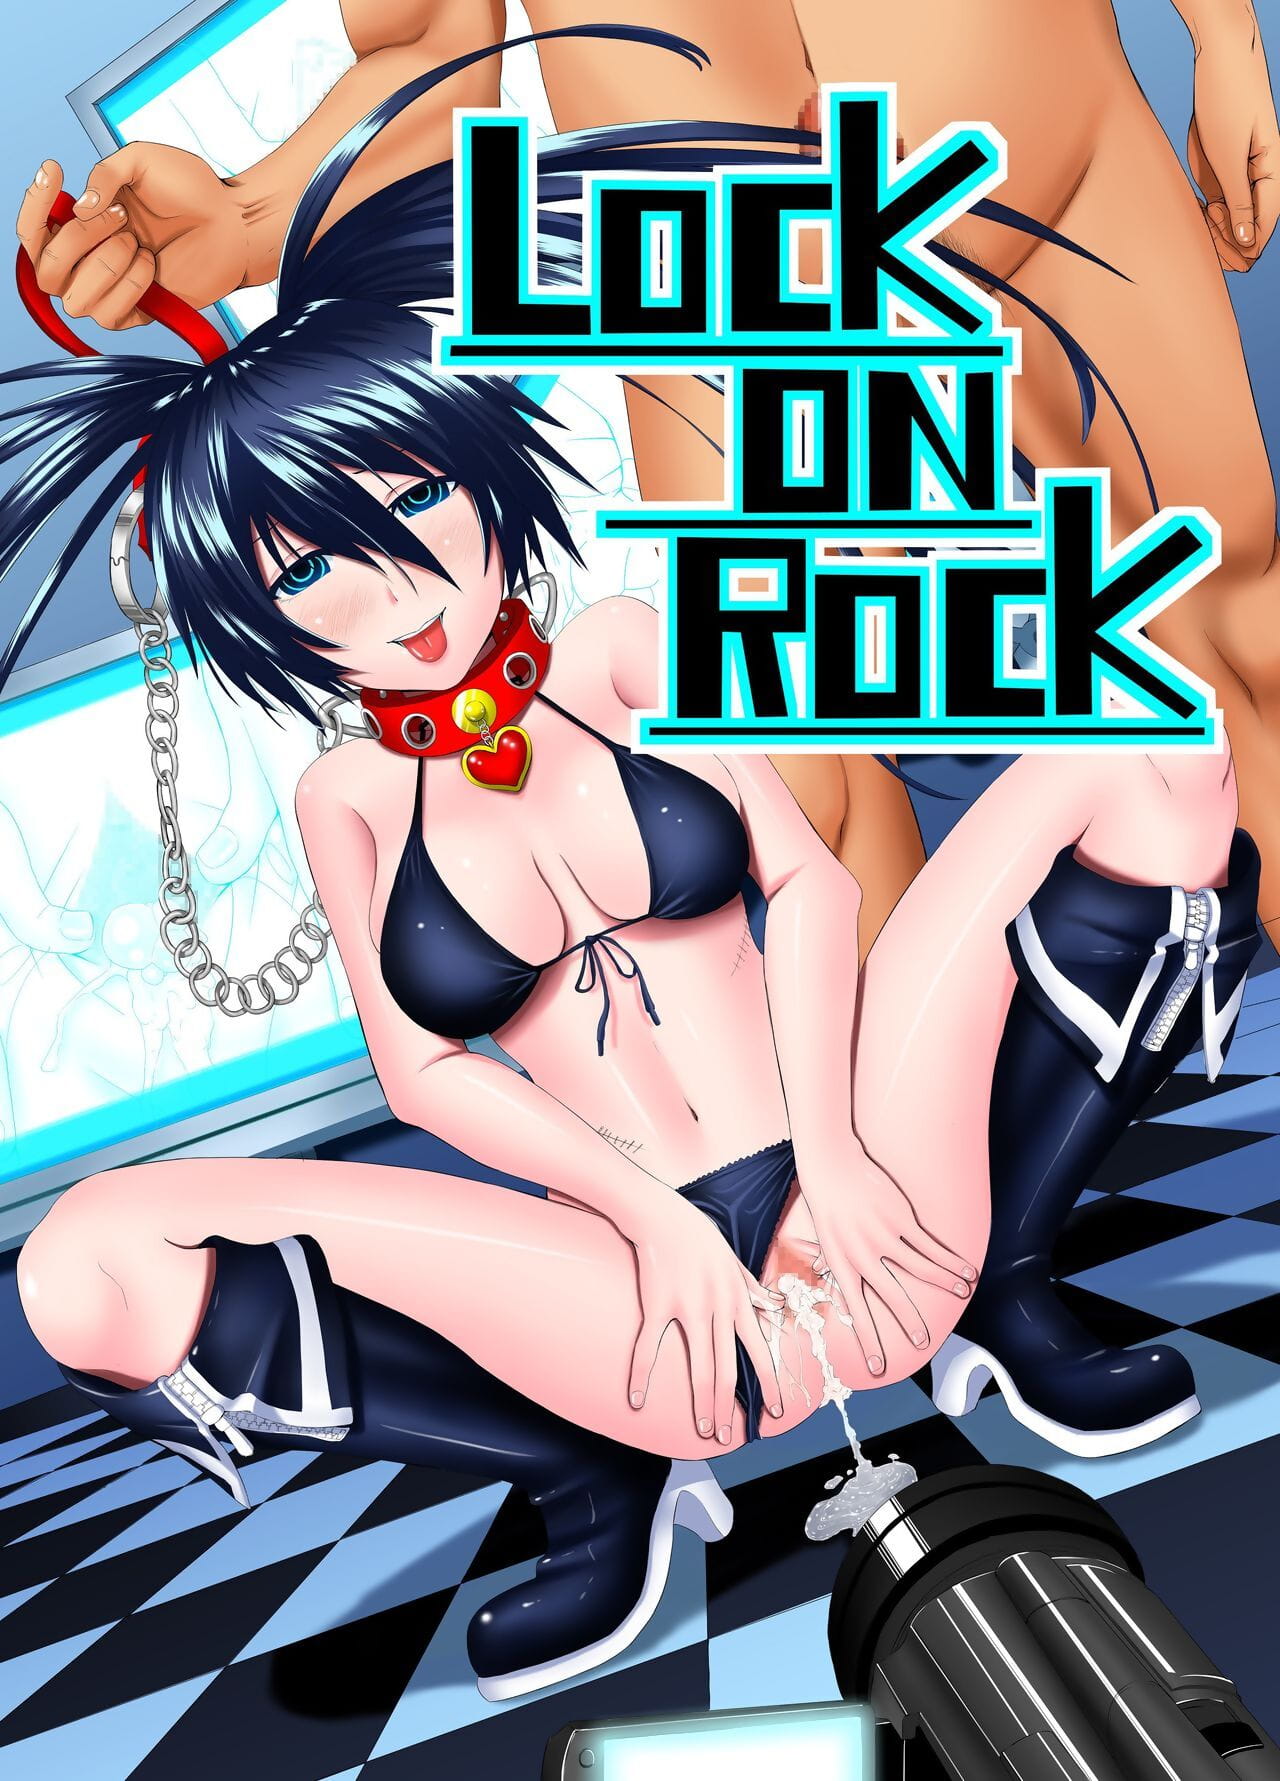 X piero Zamek na rock black★rock strzelec